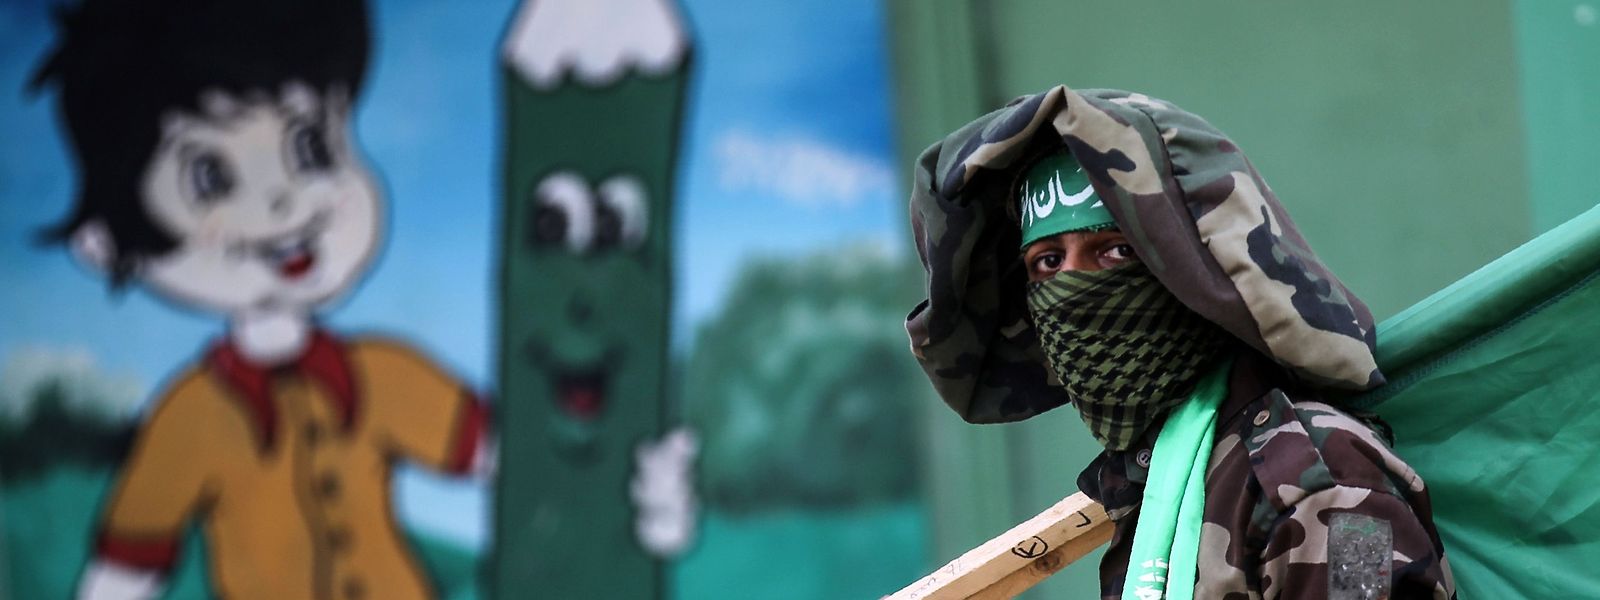 Die Hamas hatte 2007 gewaltsam die alleinige Macht im Gazastreifen an sich gerissen und die Fatah vertrieben. Bisher scheiterten alle Versöhnungsversuche. 